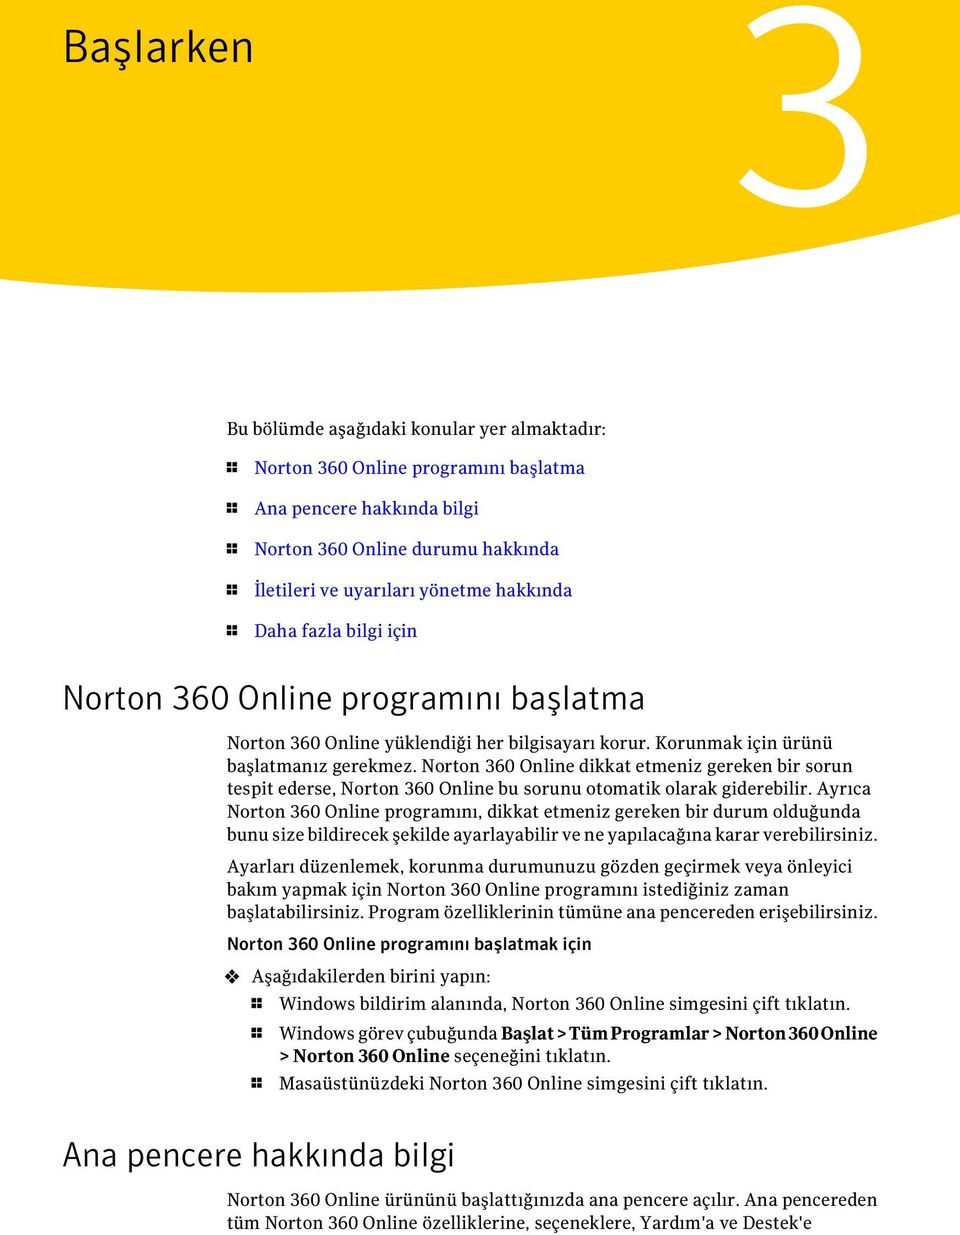 Norton 360 Online dikkat etmeniz gereken bir sorun tespit ederse, Norton 360 Online bu sorunu otomatik olarak giderebilir.